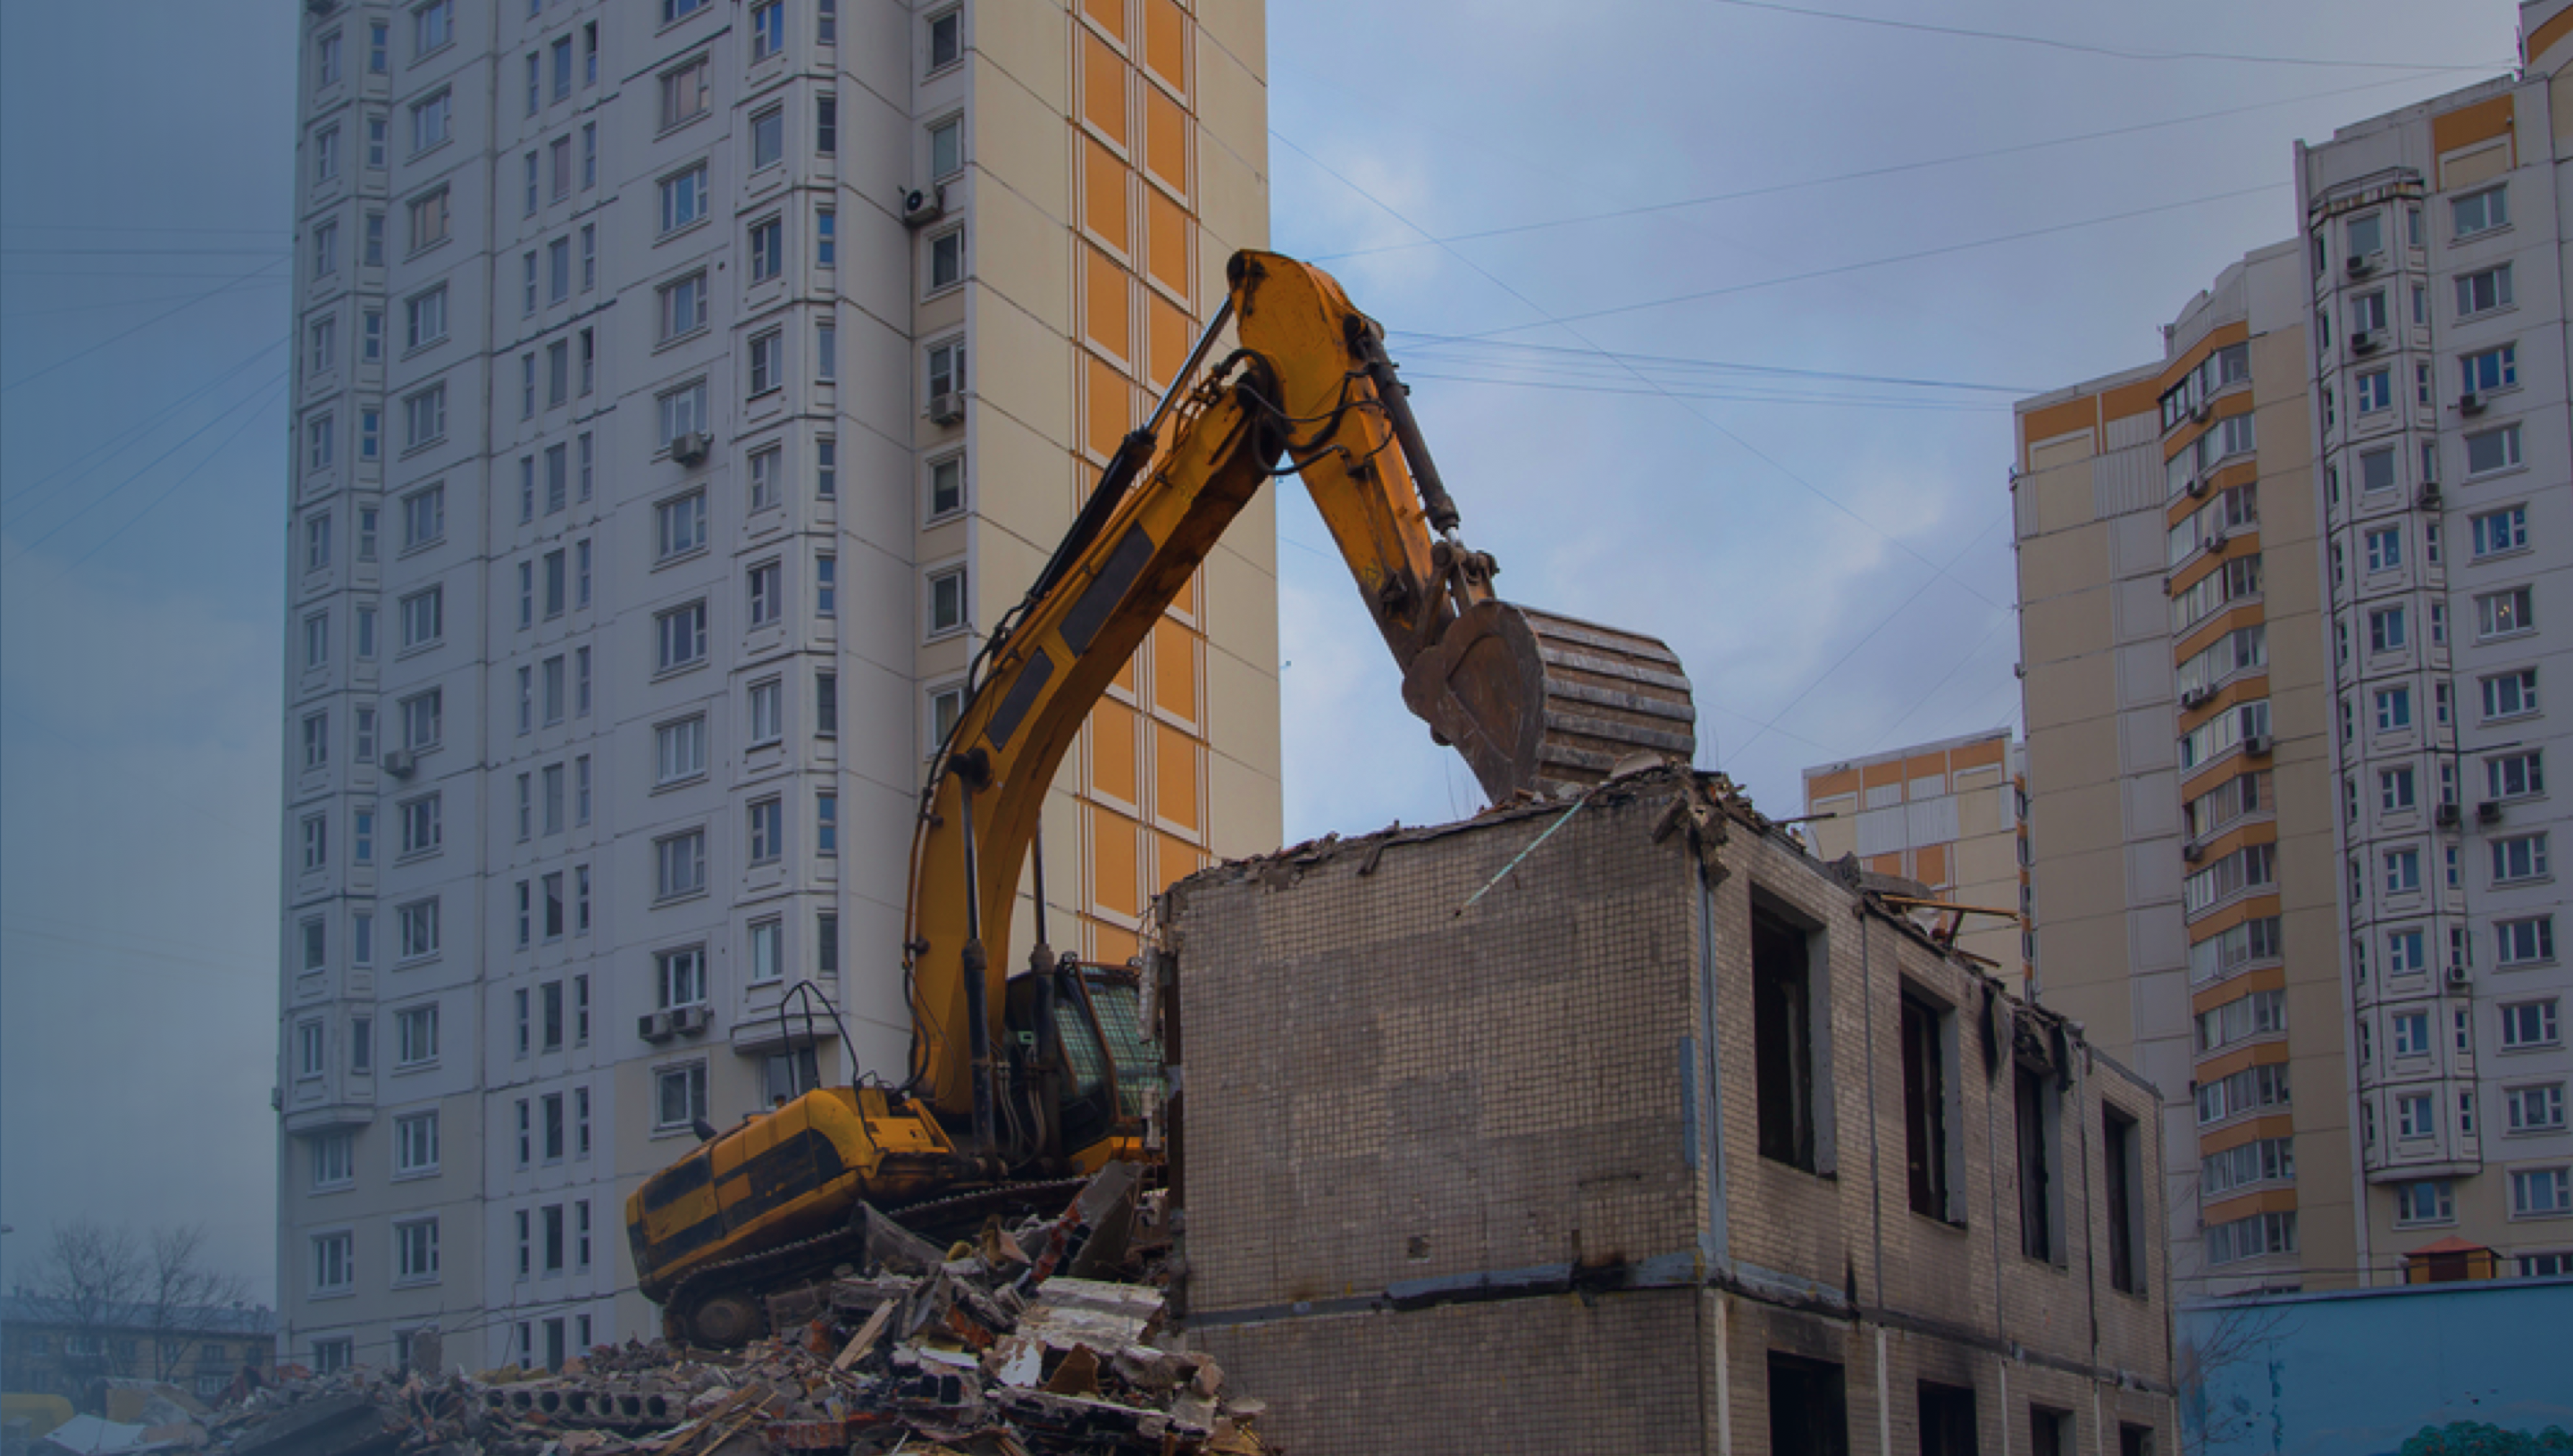 Порядка 600 семей переедут в новые дома в Олекминском районе Якутии до 2025 года